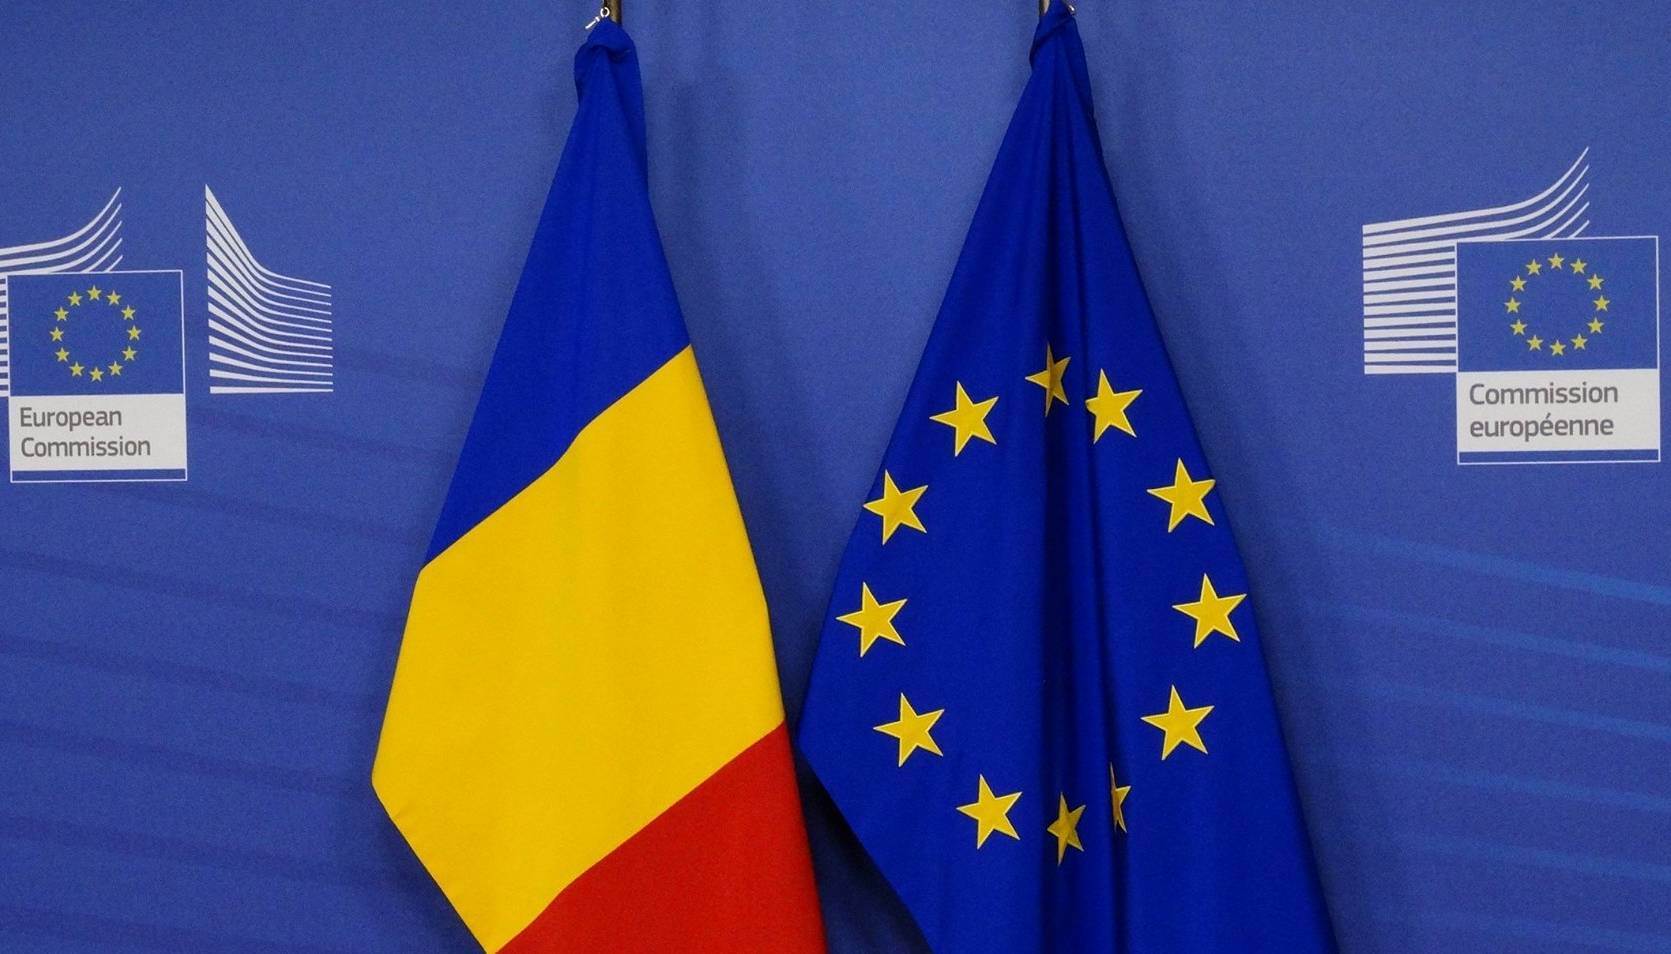 Comisia Europeana Exemplul Solidaritate Romanilor Ucrainienii